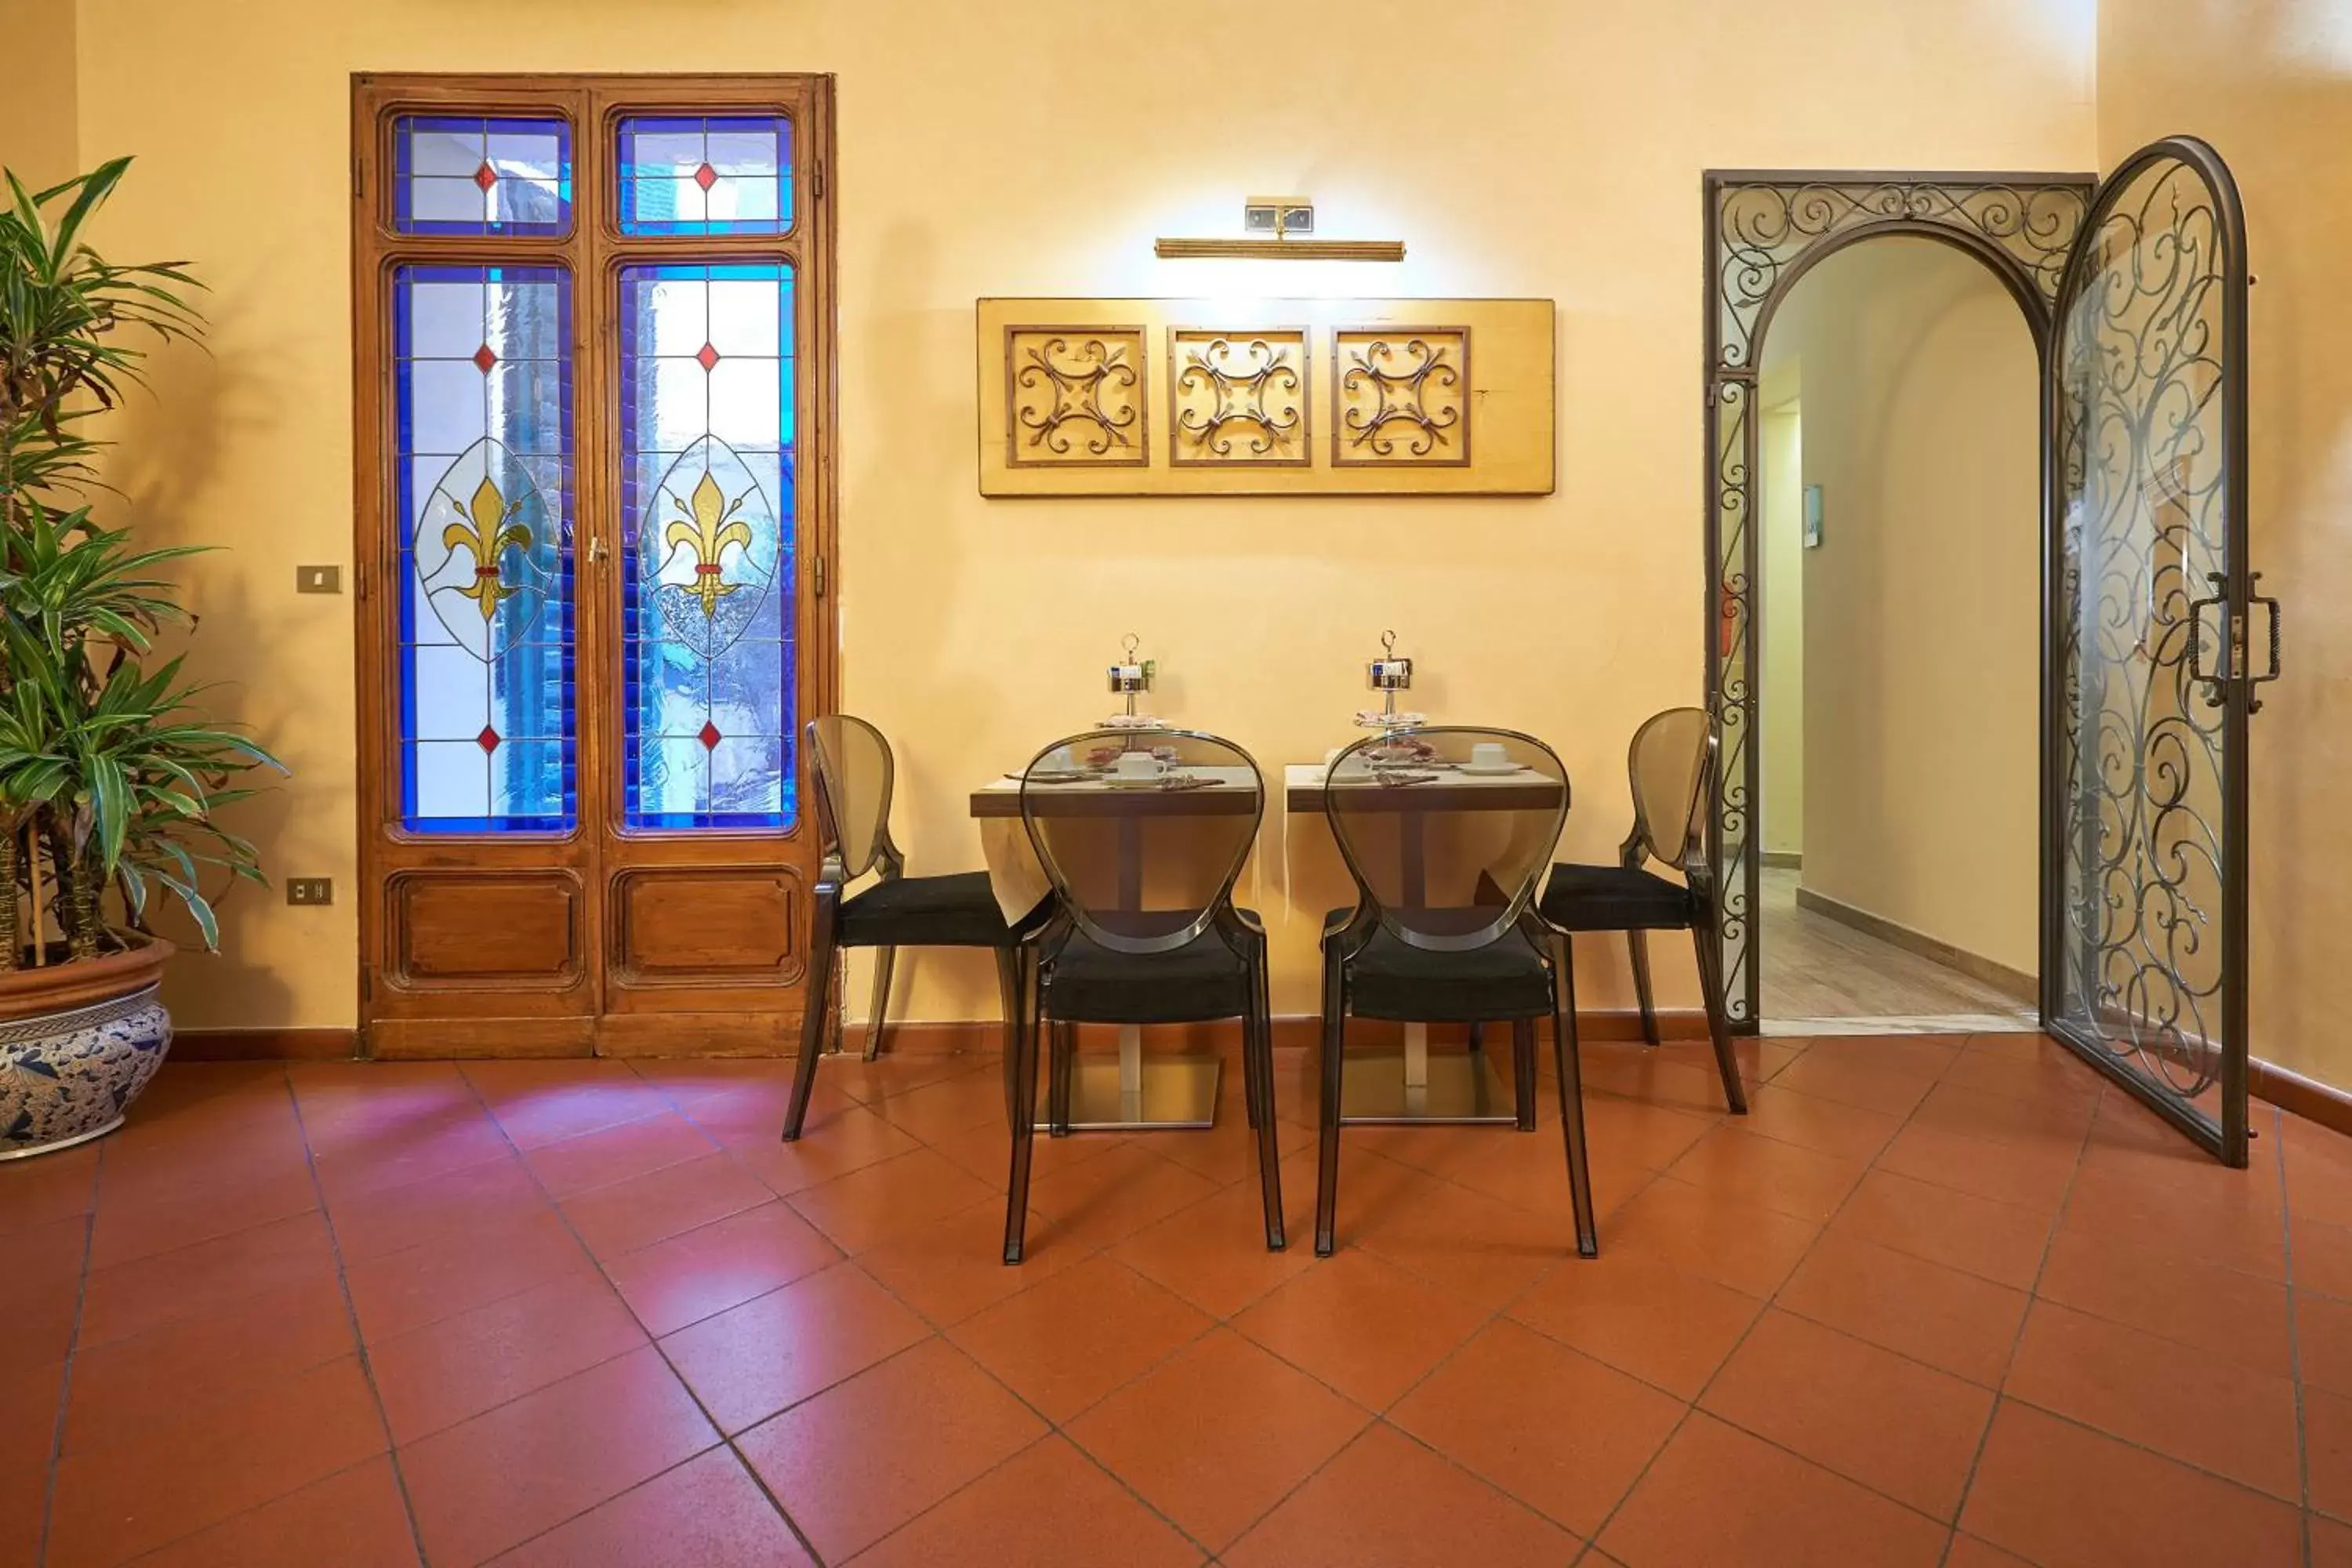 Decorative detail, Dining Area in Hotel Cosimo de' Medici